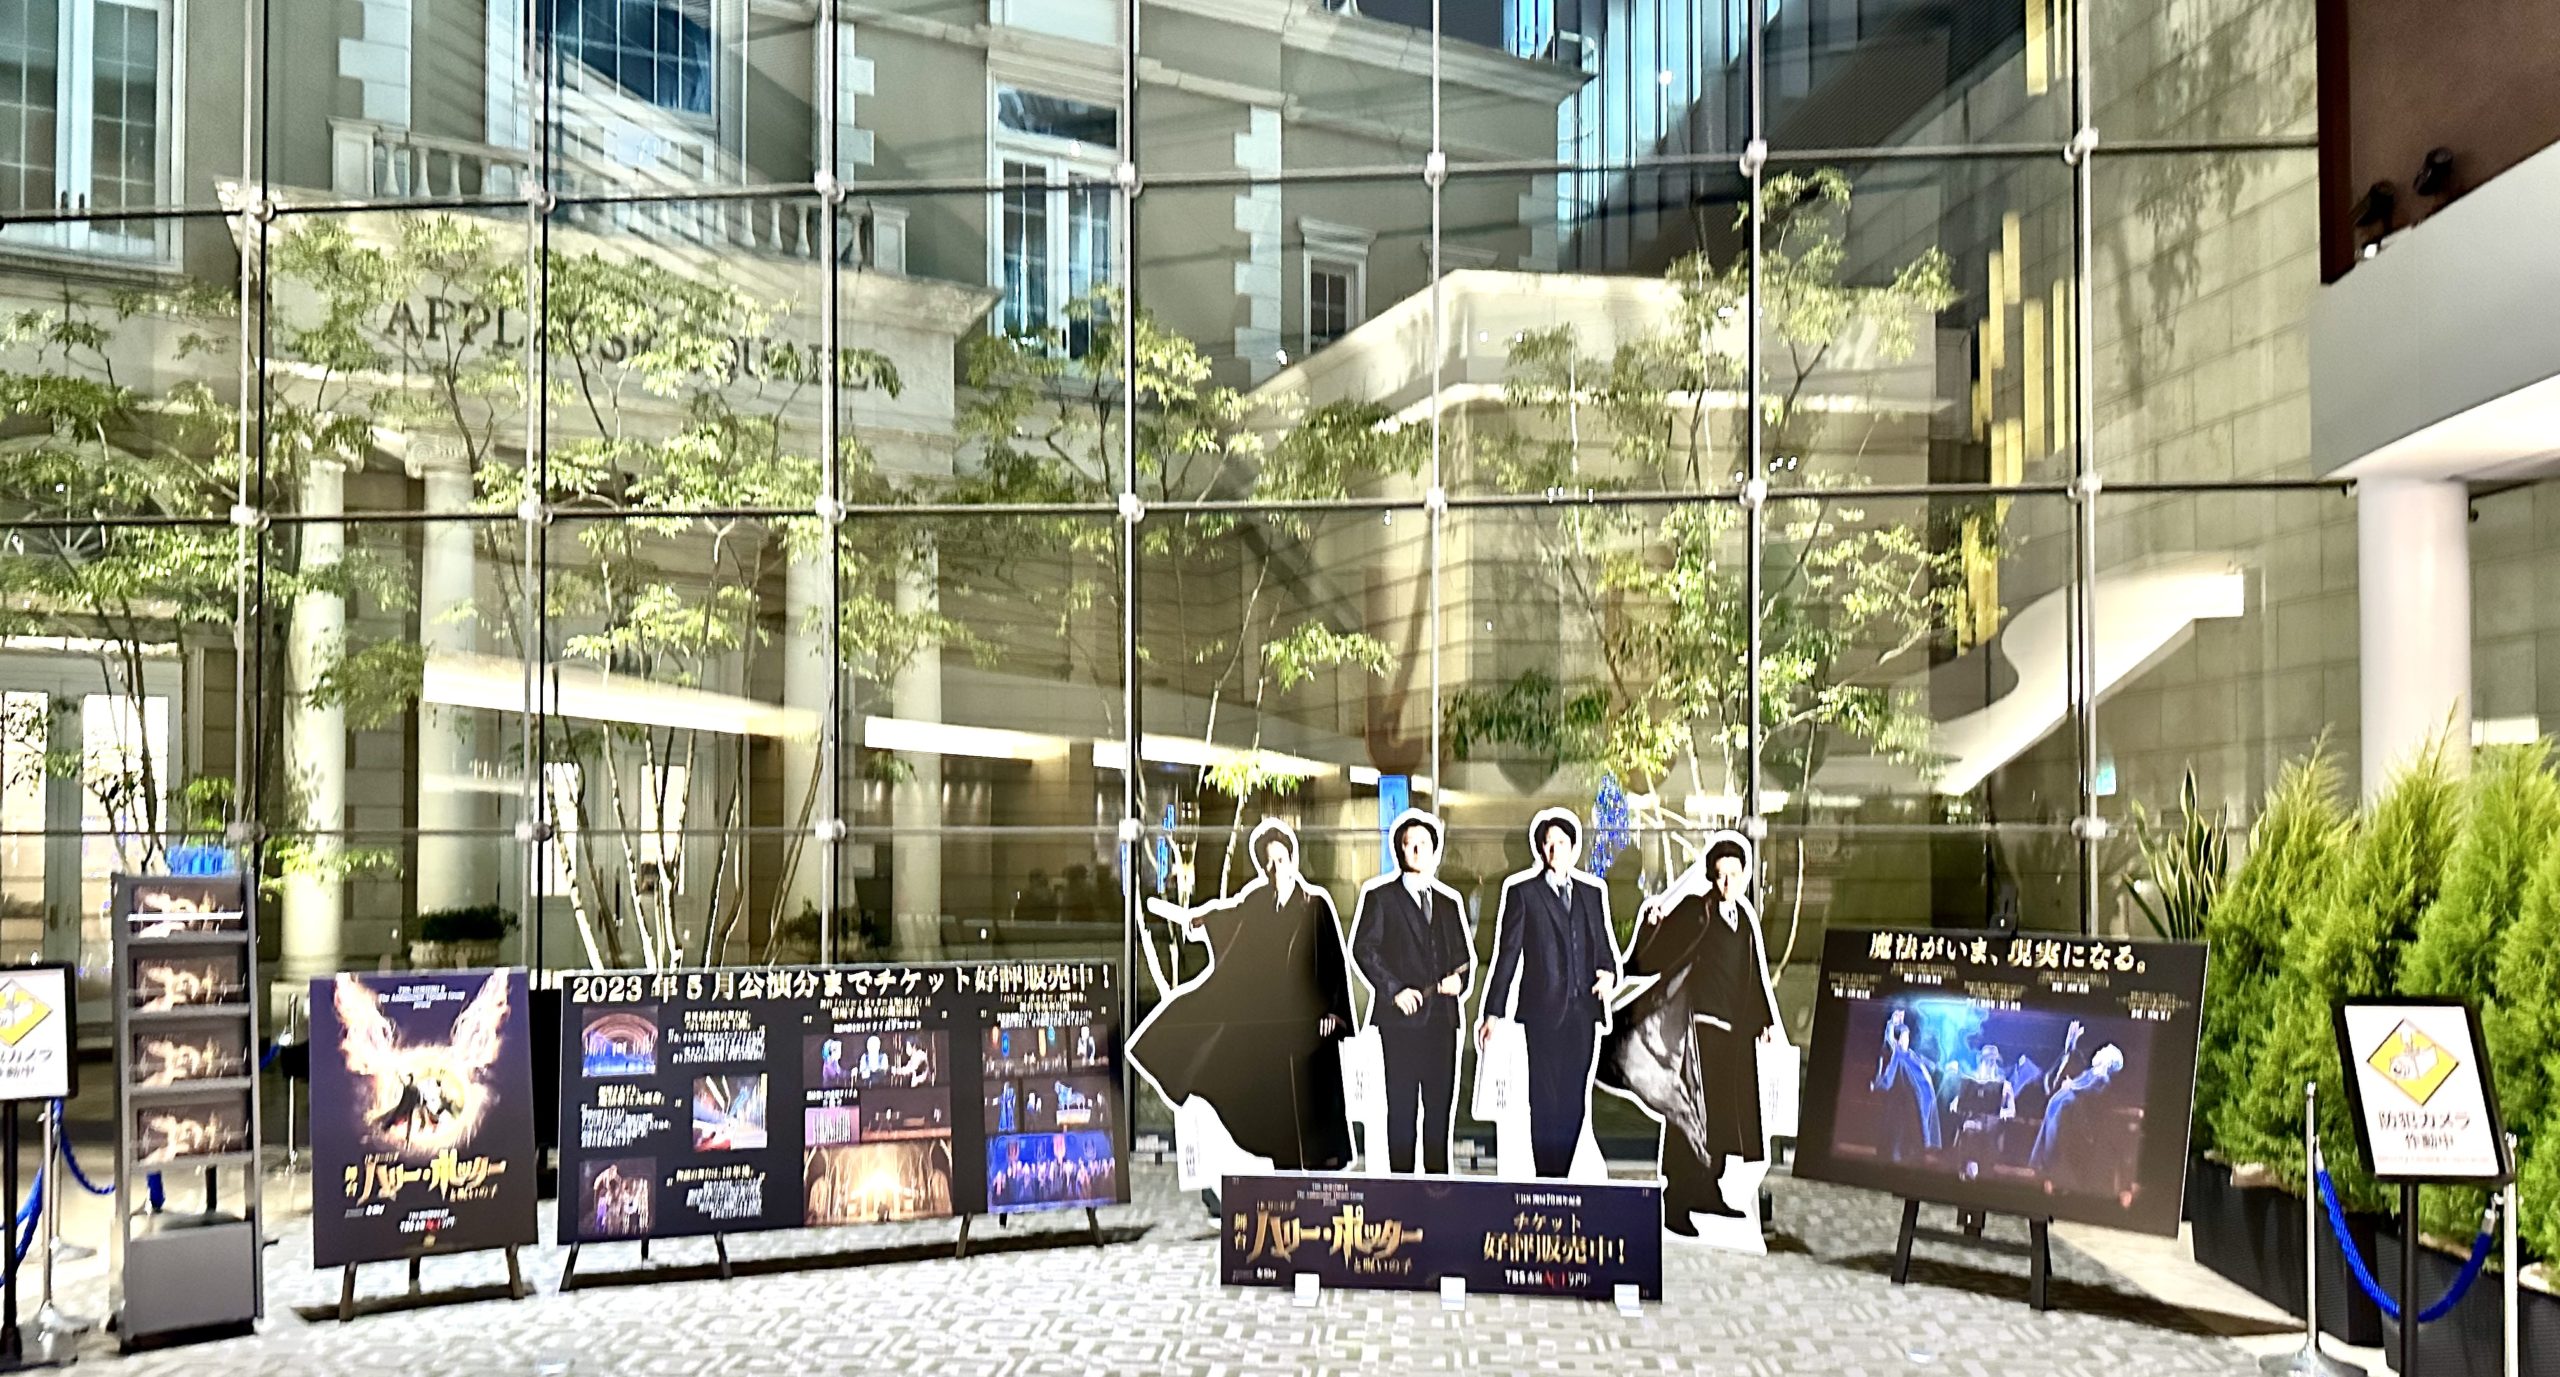 赤坂Bizタワー2Fで舞台『ハリー・ポッターと呪いの子』展示中